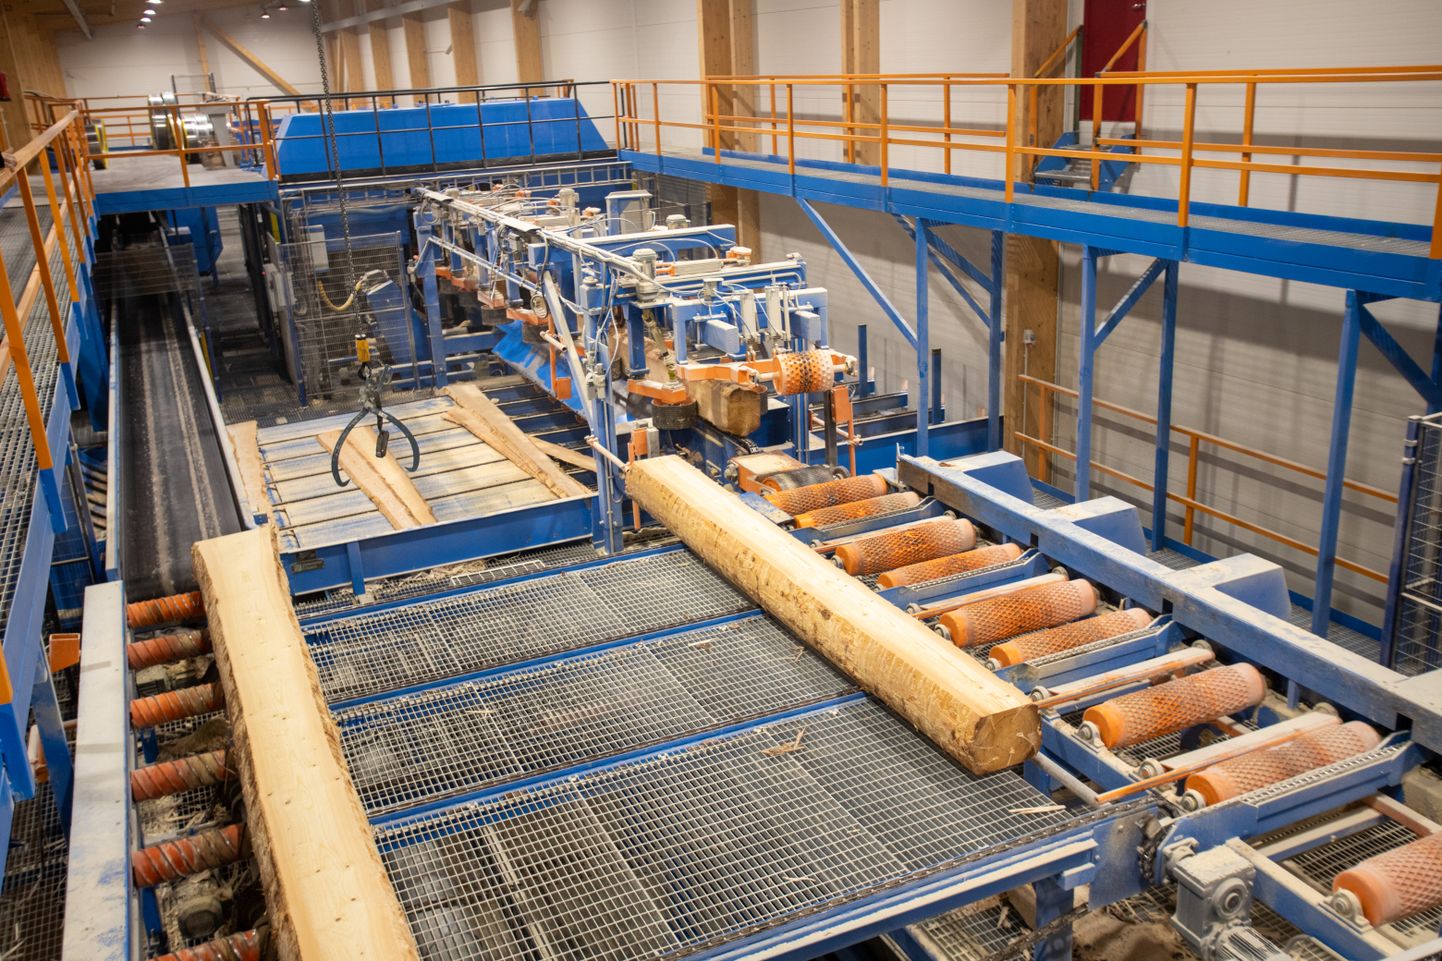 Innovatsioon ning kõrgtehnoloogiliste vahendite kasutamine aitab säilitada Eesti puidutööstuse rahvusvahelise konkurentsivõime.